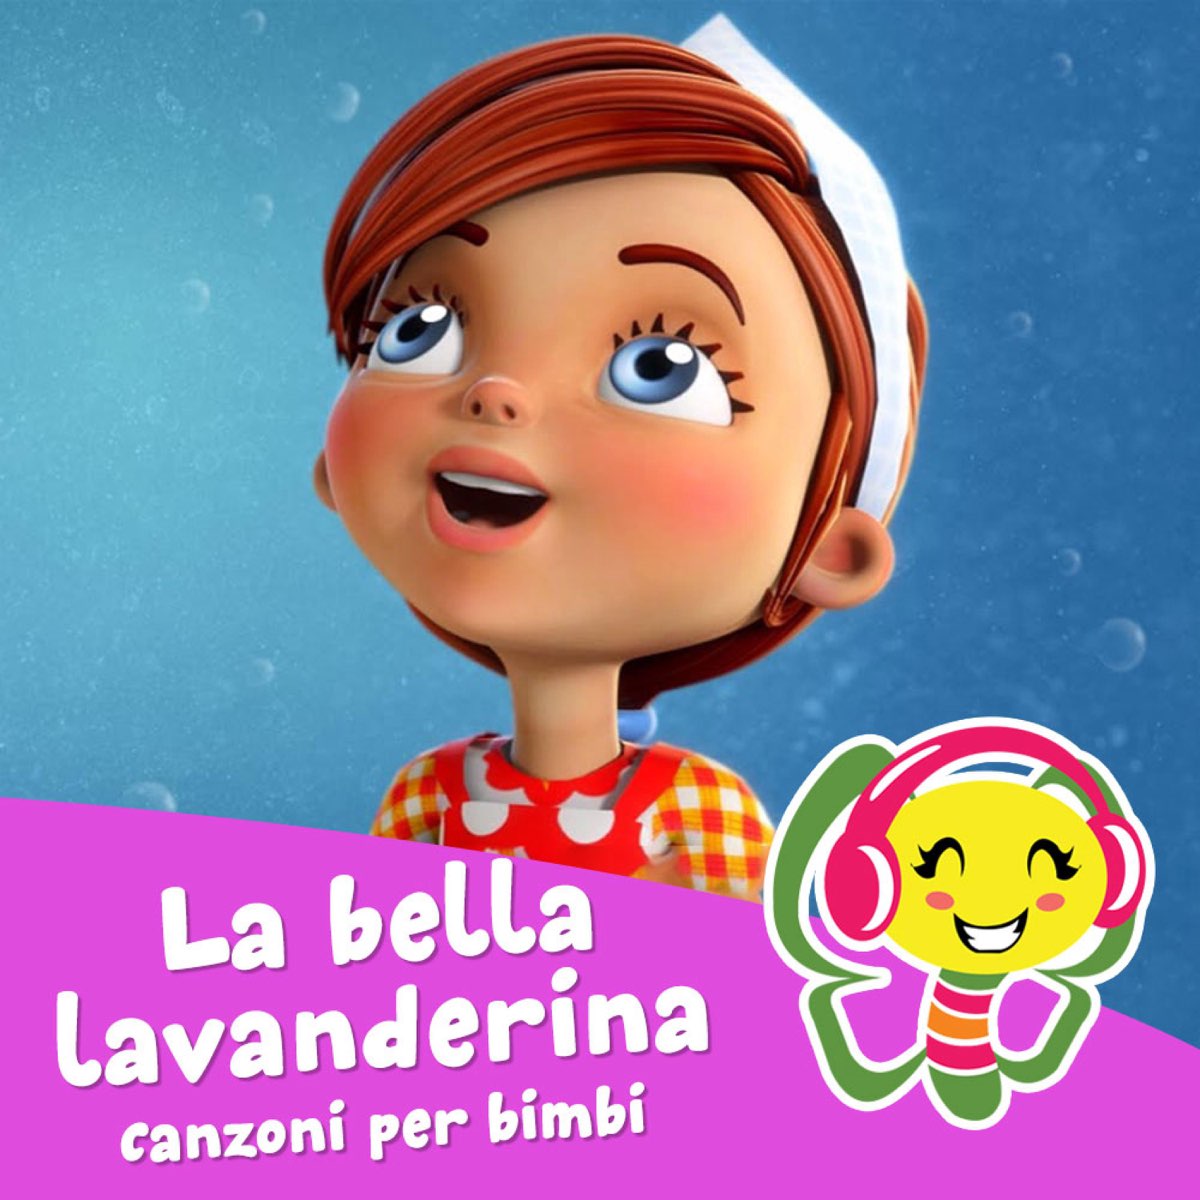 La bella lavanderina - Single - Álbum de CanzoniPerBimbi - Apple Music